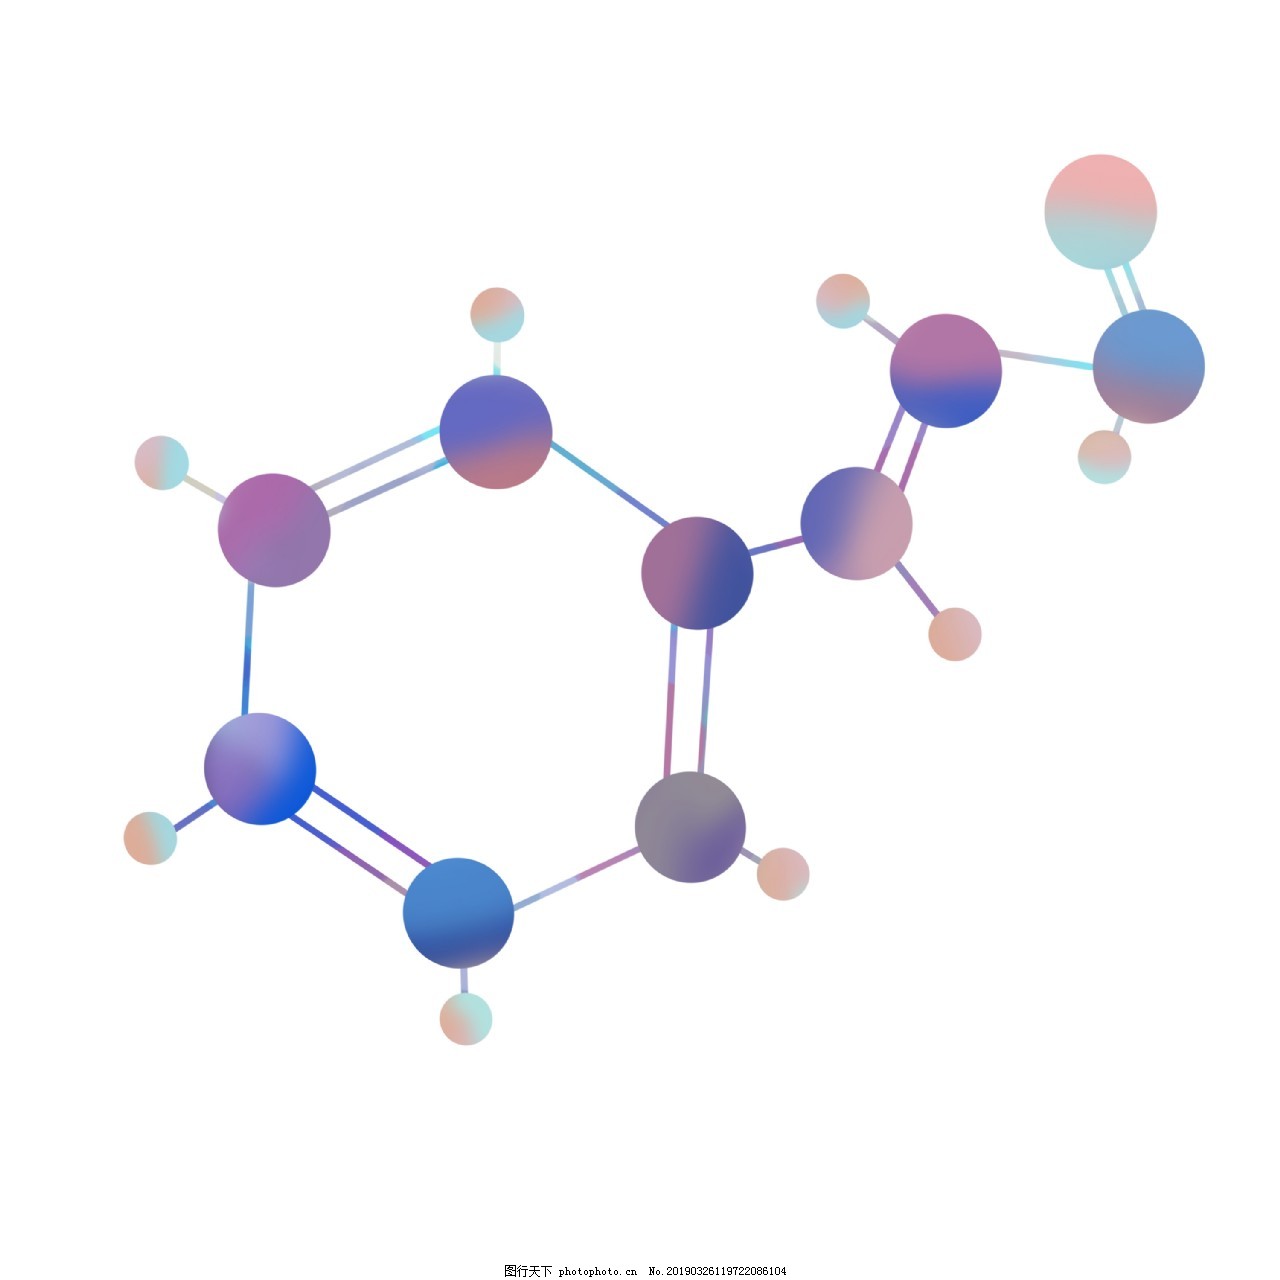 矢量图化学分子结构图图片素材免费下载 - 觅知网